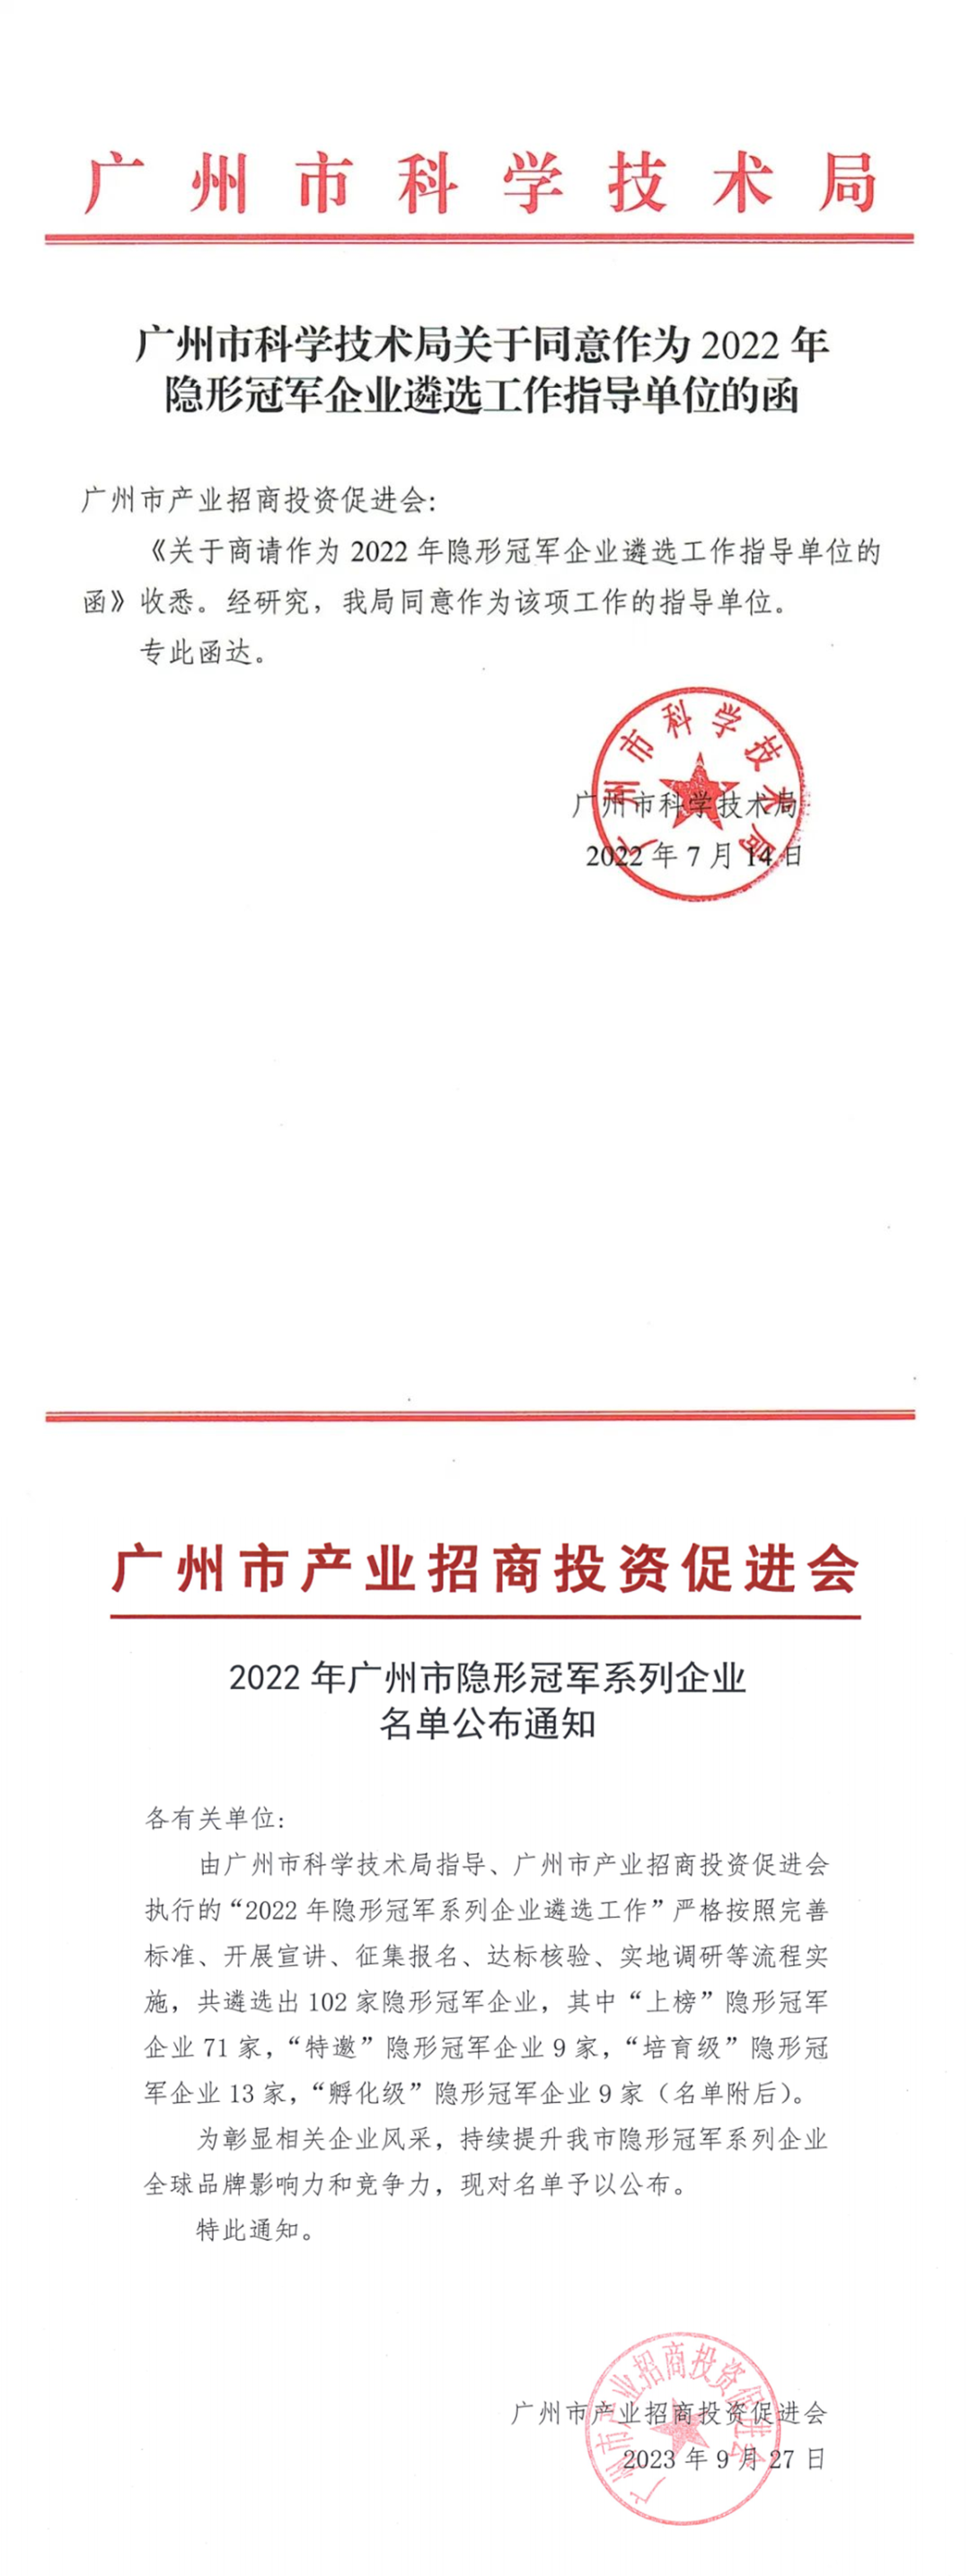 再获殊荣，中检达元和集团公司获“2022年广州市隐形冠军企业”称号